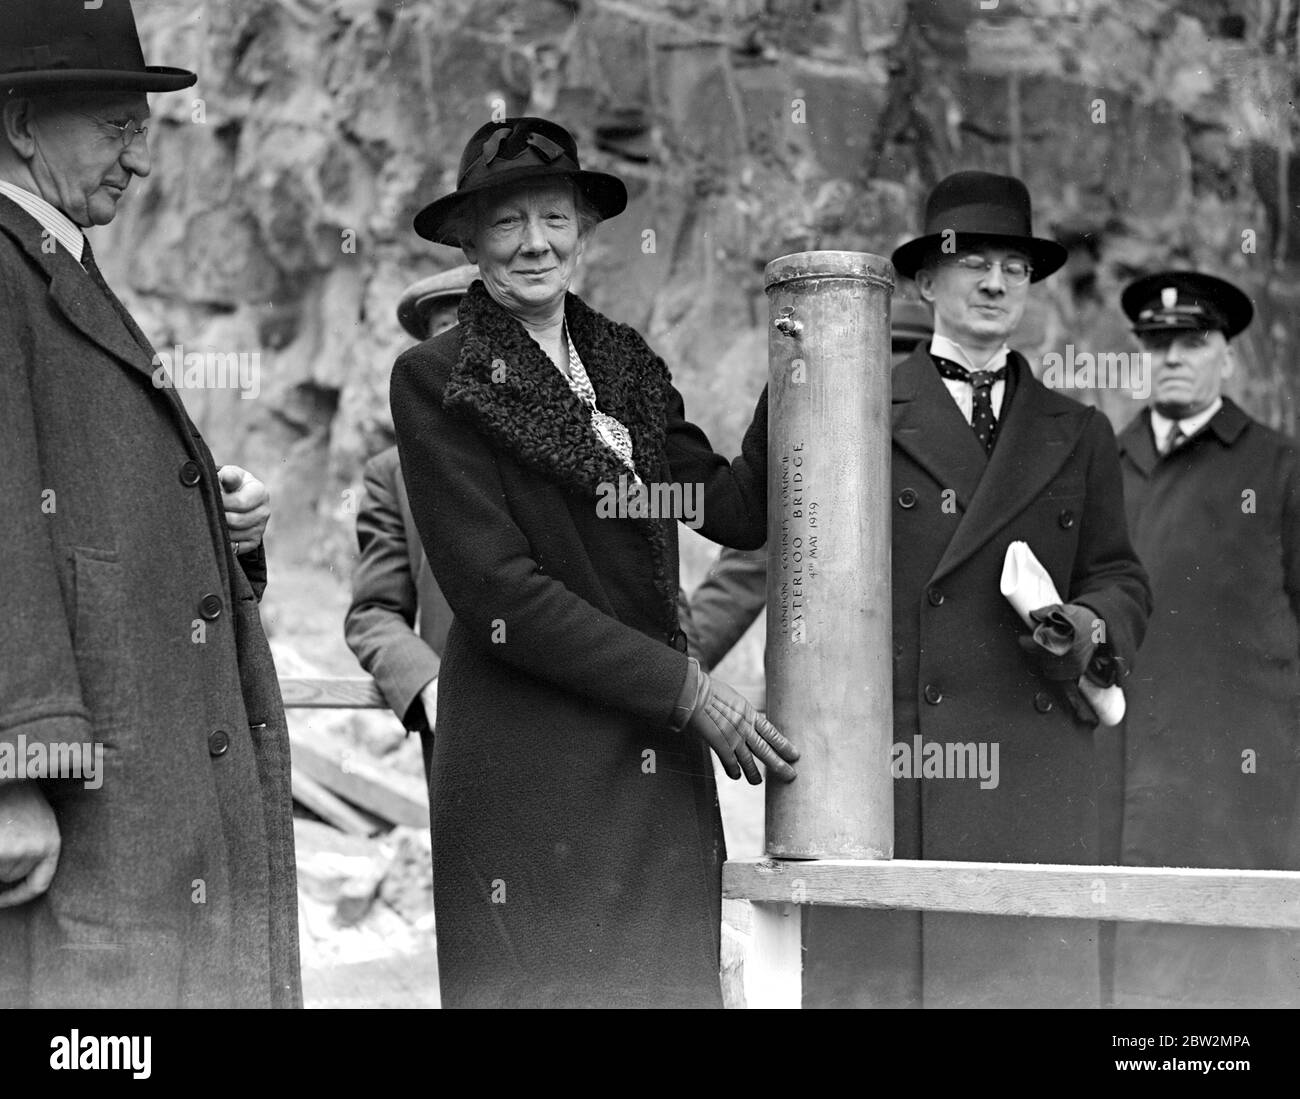 Waterloo Bridge , reliques pour l'avenir. Mme M. lowe, L.C.C. Le Président, a placé un cylindre contenant un certain nombre d'articles du moment dans les fondations de la nouvelle structure. 4 mai 1939. Banque D'Images